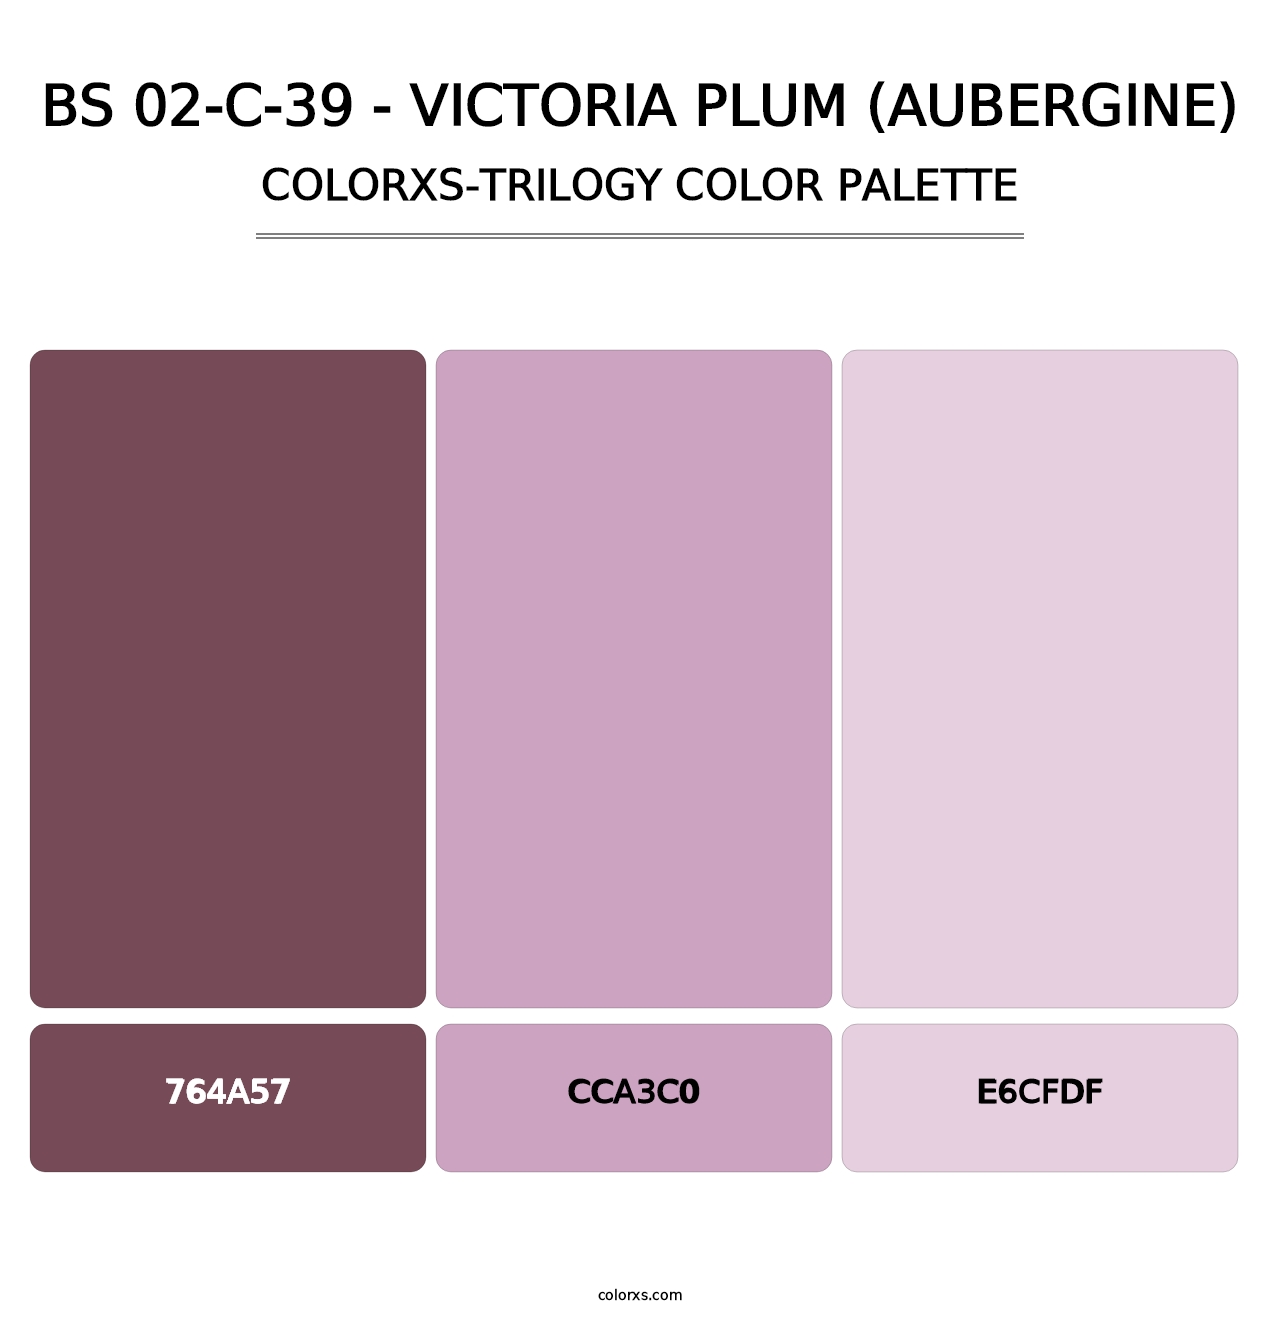 BS 02-C-39 - Victoria Plum (Aubergine) - Colorxs Trilogy Palette